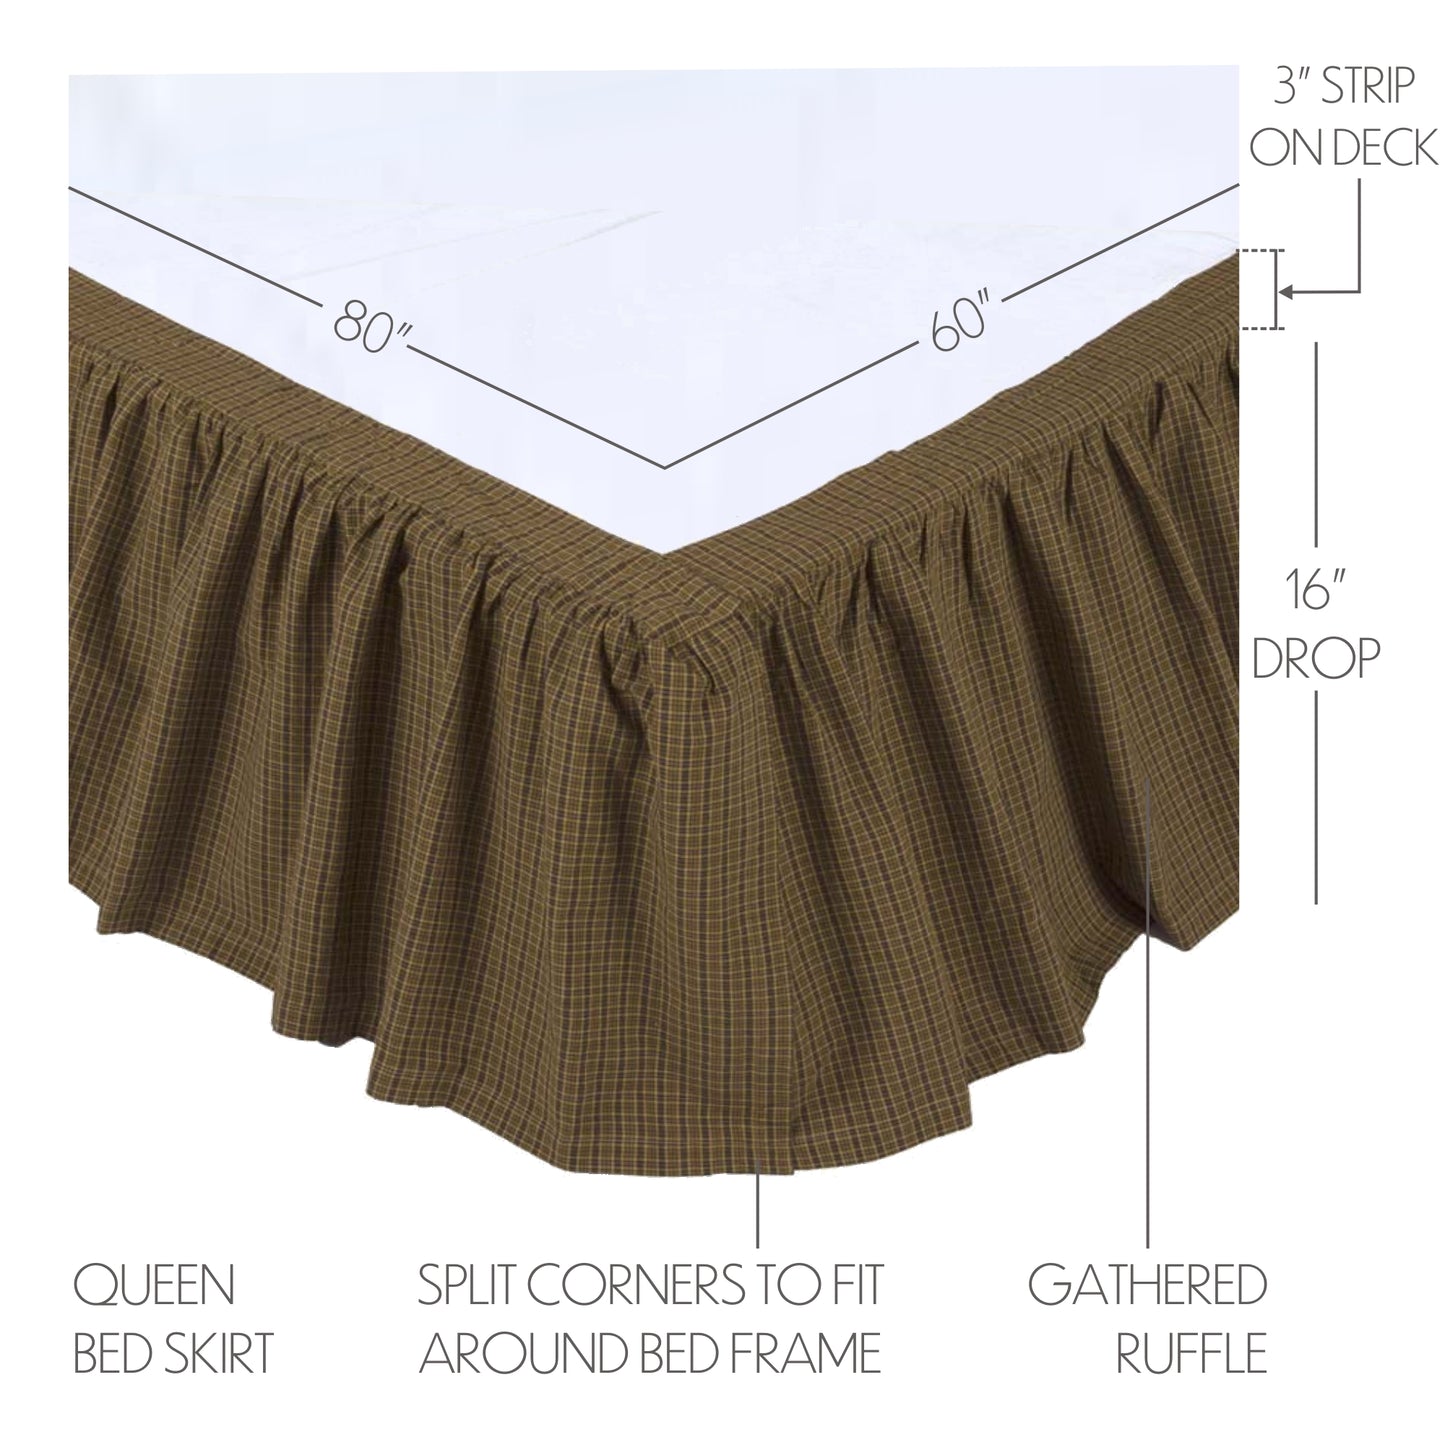 10742-Tea-Cabin-Queen-Bed-Skirt-60x80x16-image-2